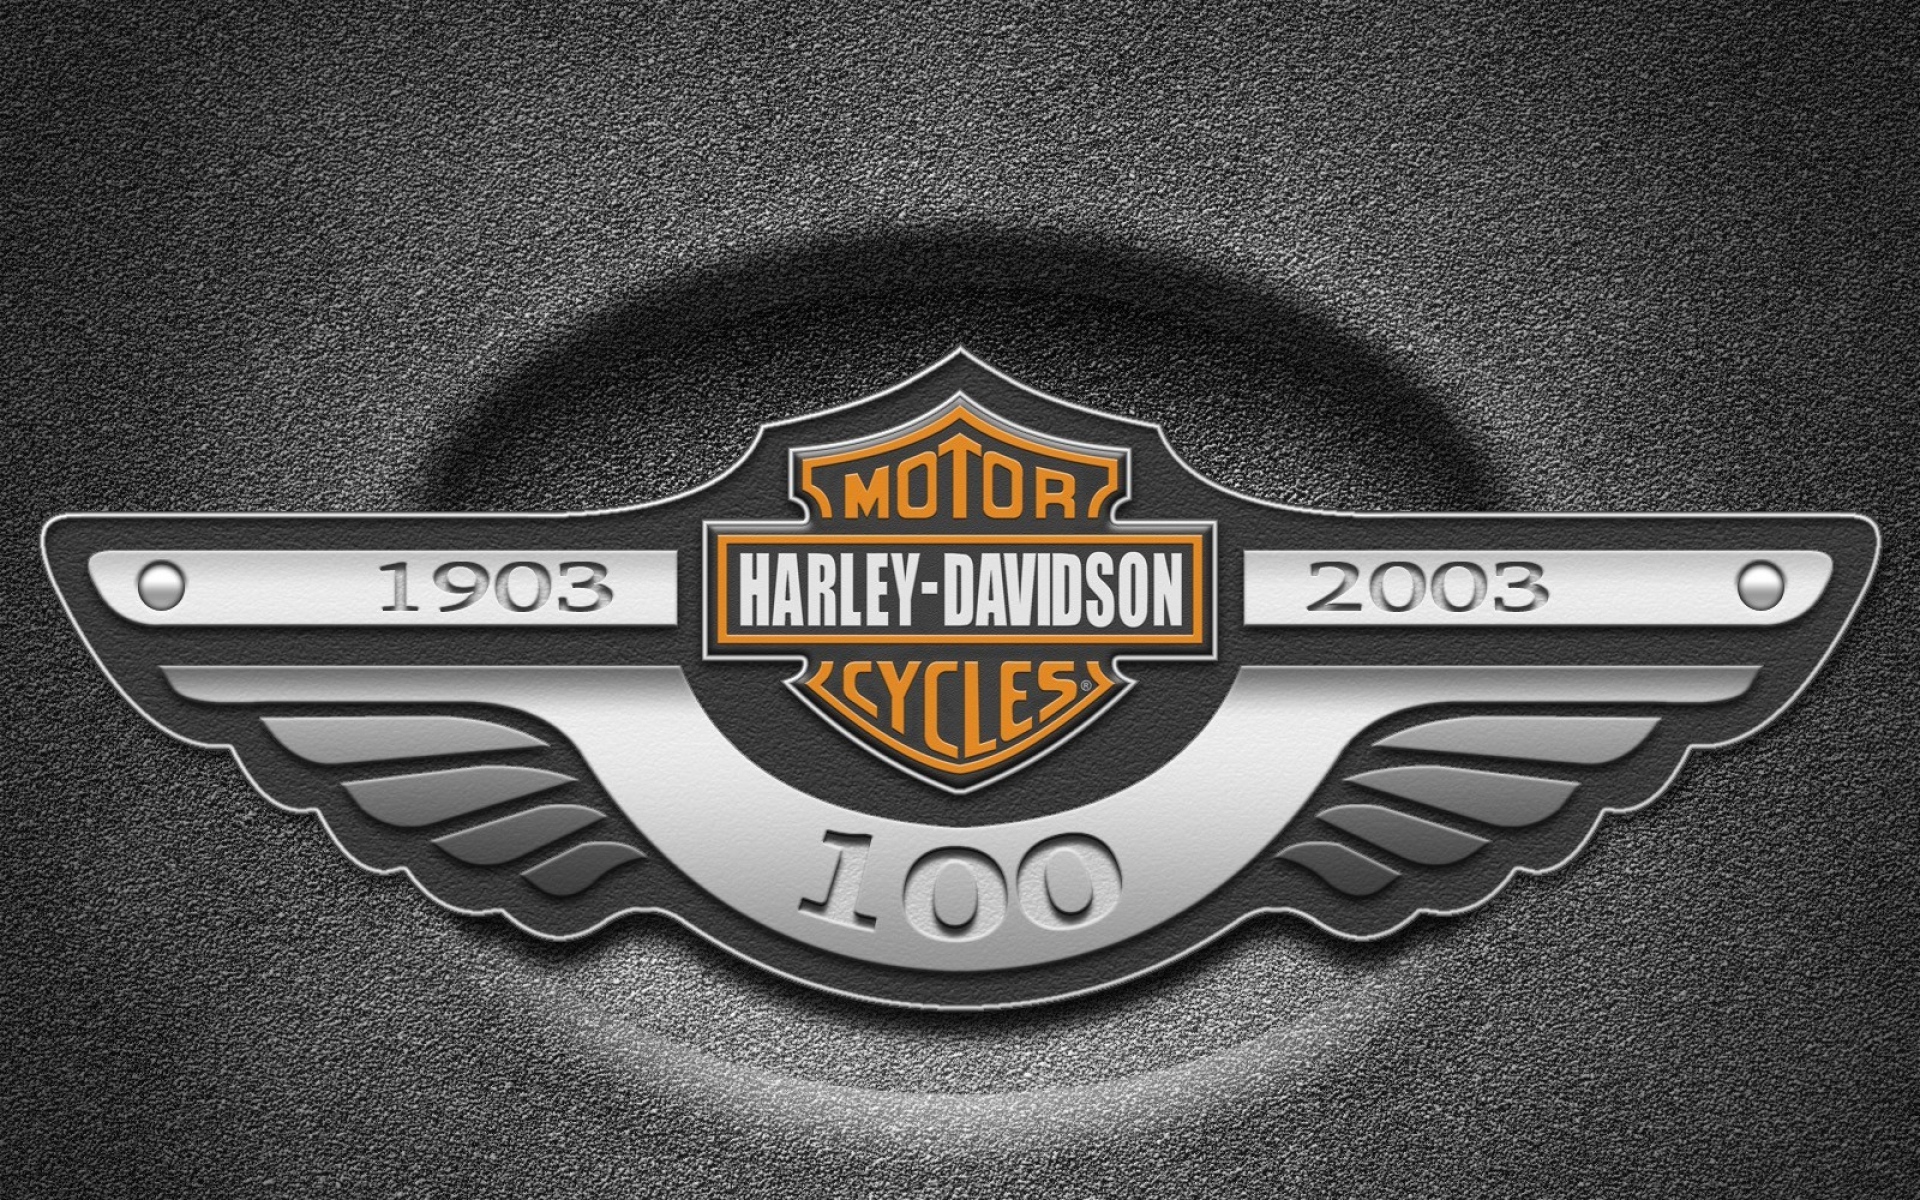 Картинки Harley davidson, мотоциклы, бренд, фирма фото и обои на рабочий стол